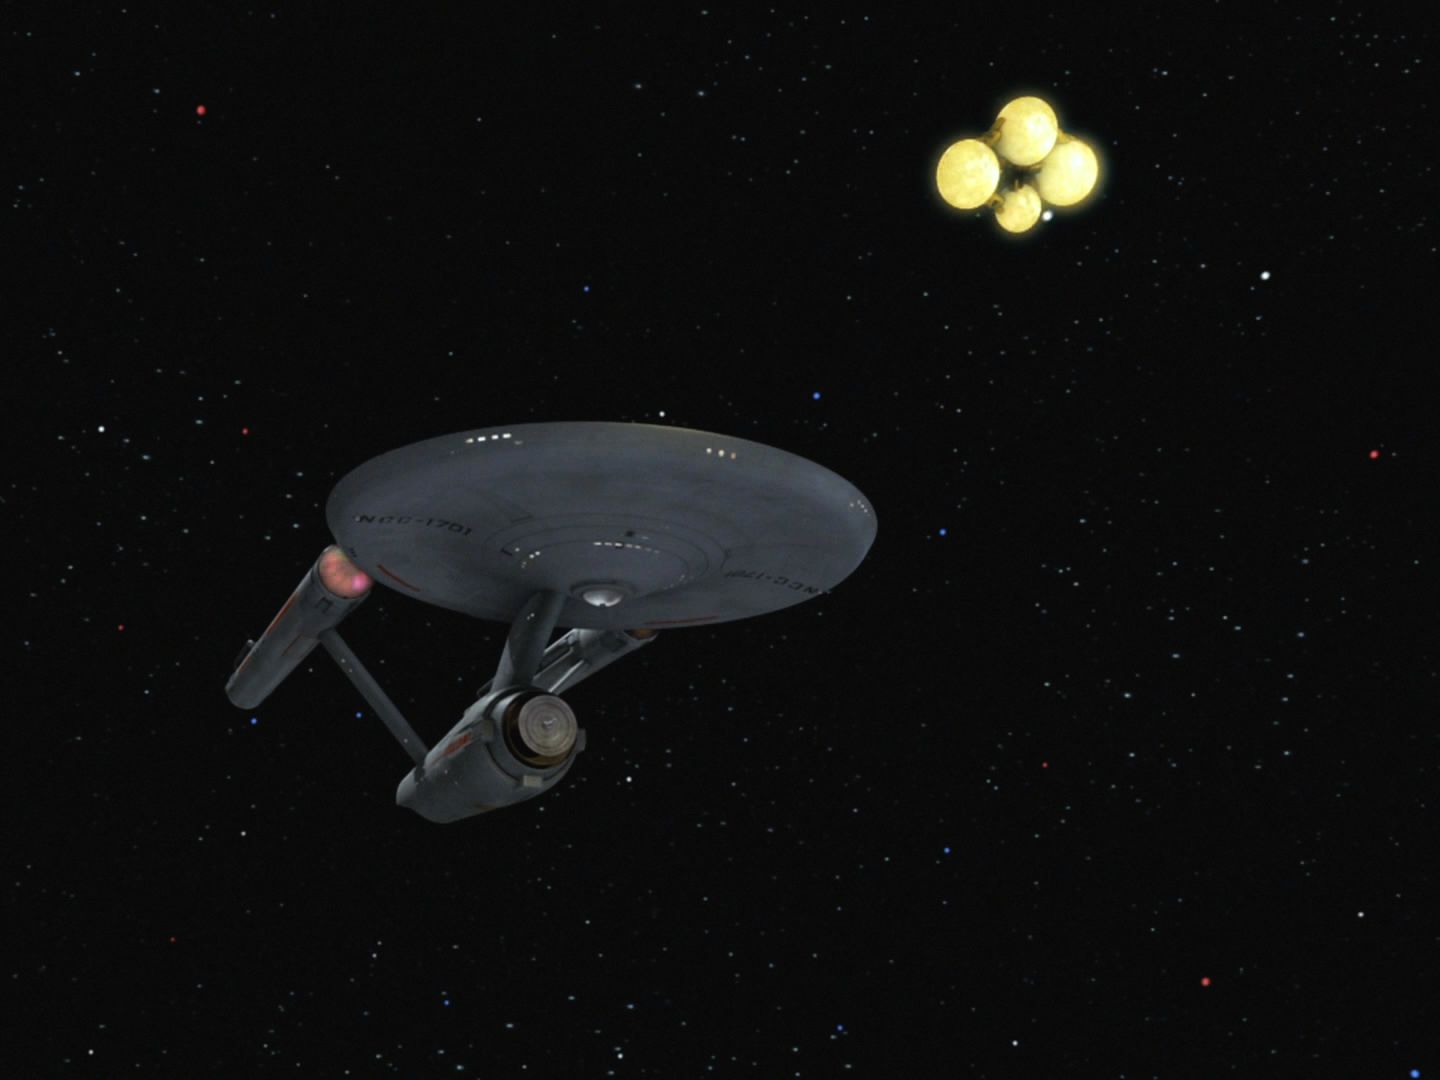 Z Fesaria ale přiletěla malá loď a vzala Enterprise do vleku. Posádka má být internována a Enterprise zničena. Až po značném úsilí se podaří odtrhnout se.